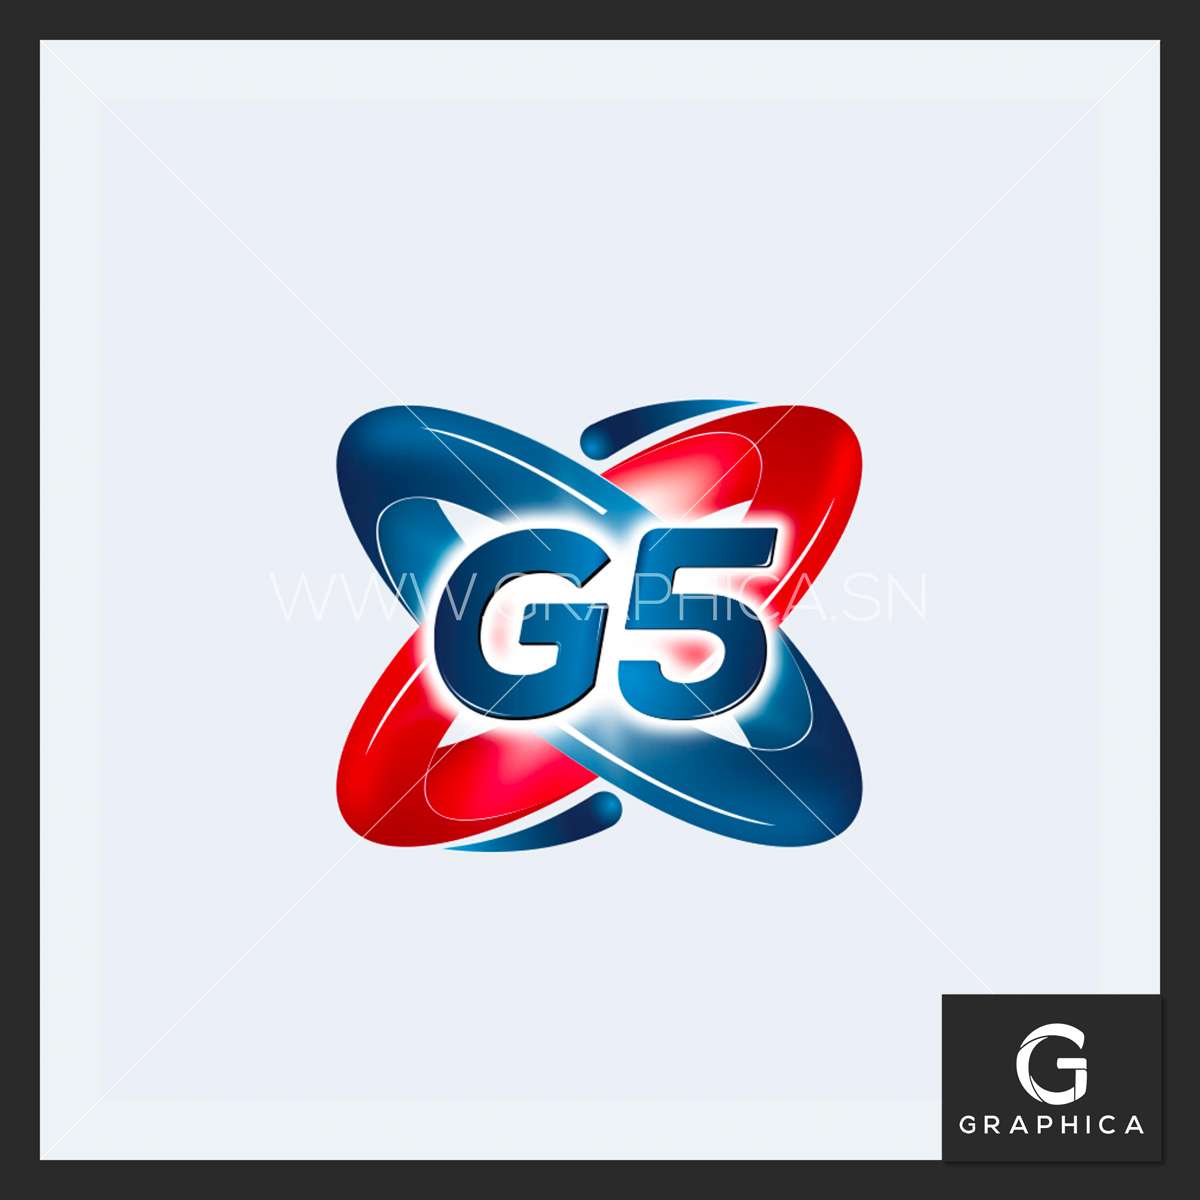 Logo G5 entretien menager dakar